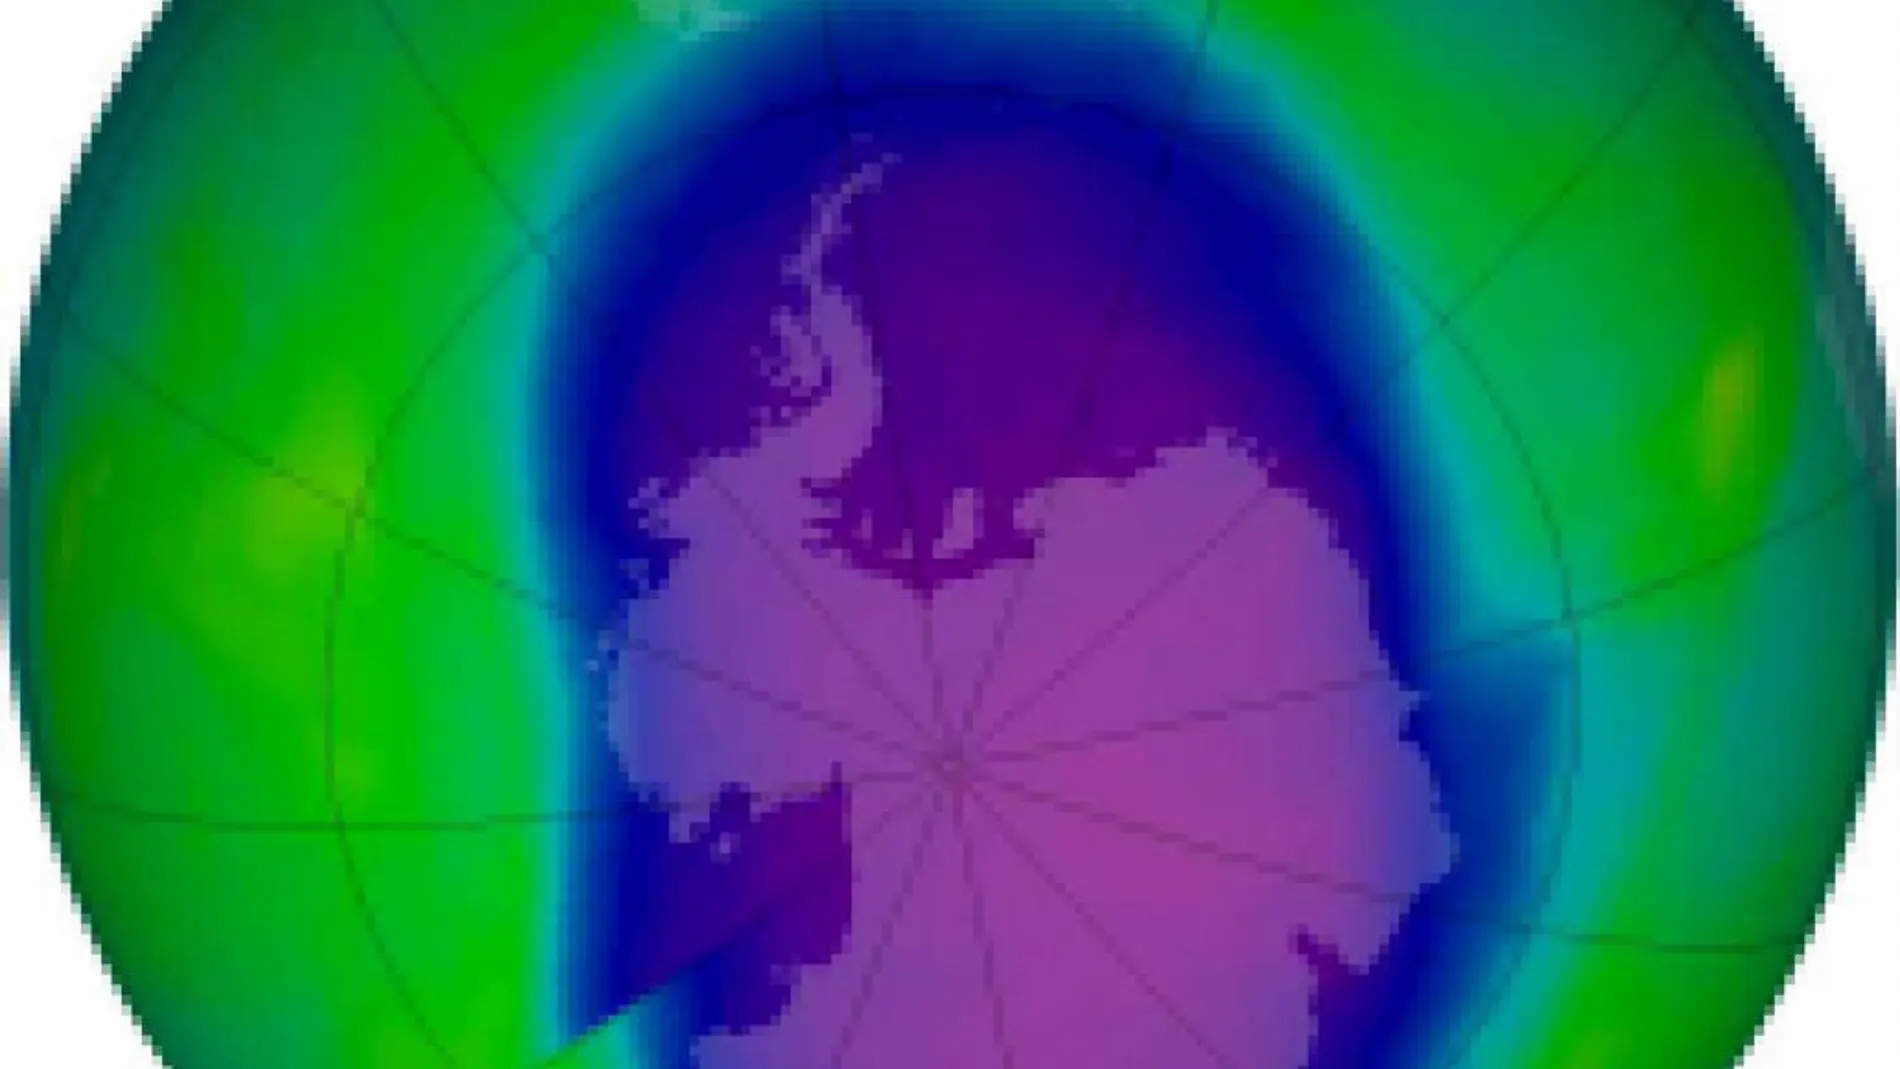 Capa de ozono sobre la Tierra, en una imagen captada en 2006